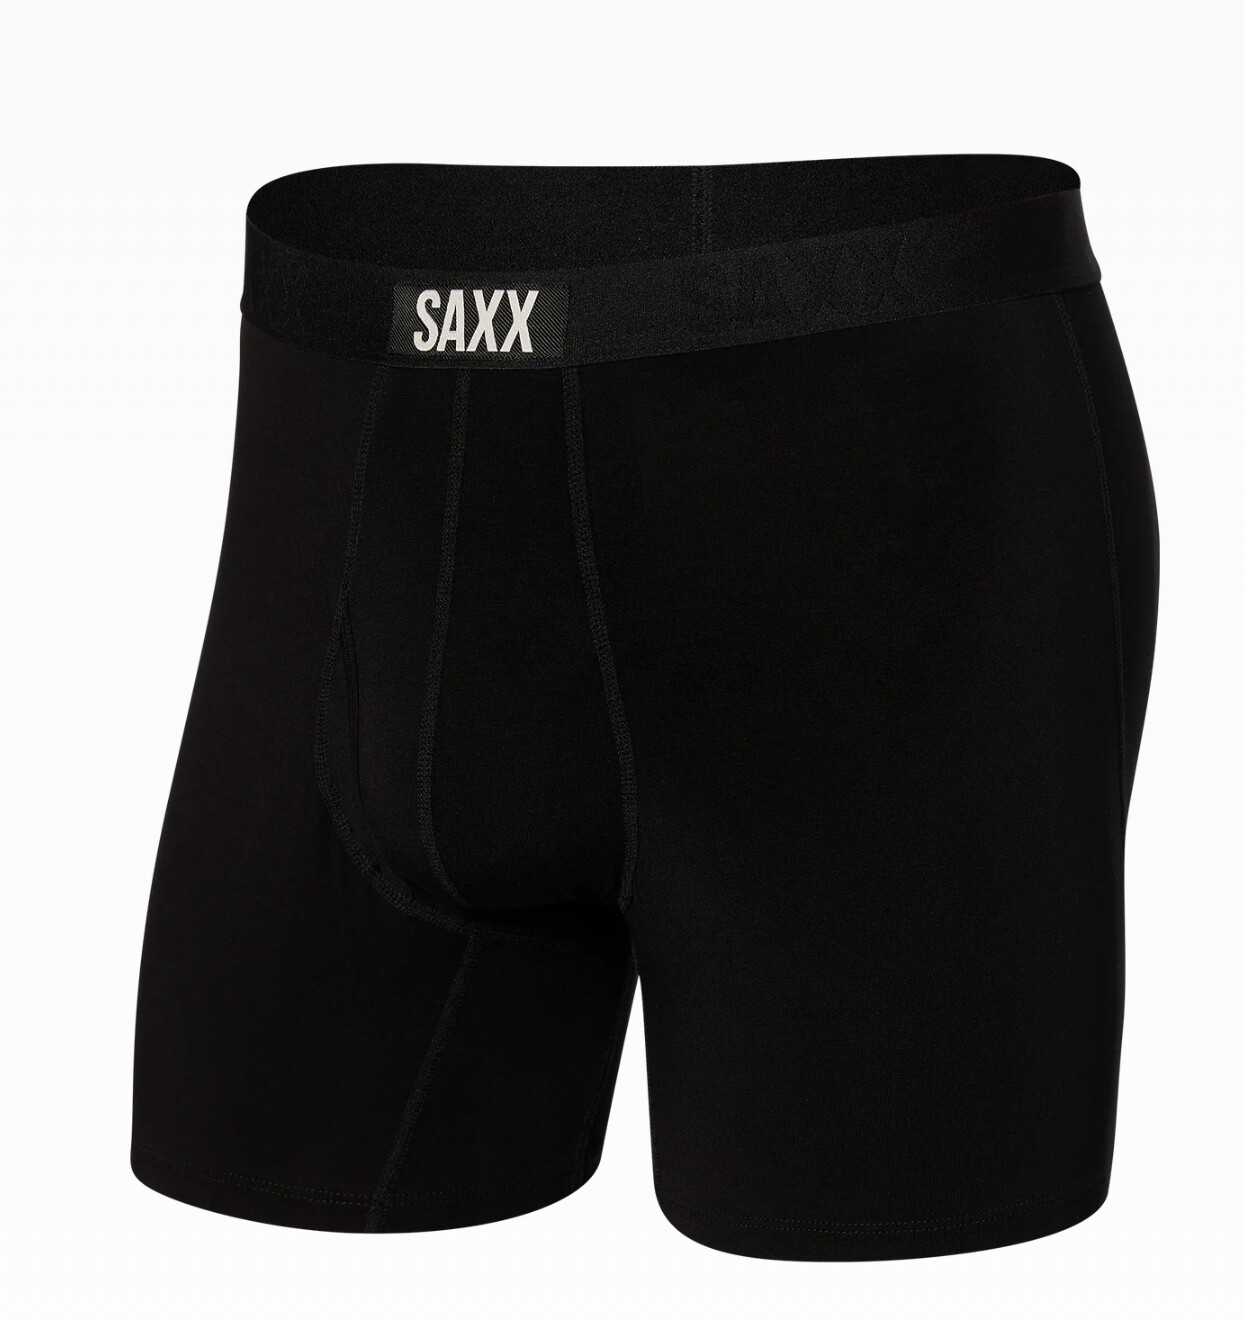 SAXX Ultra Black